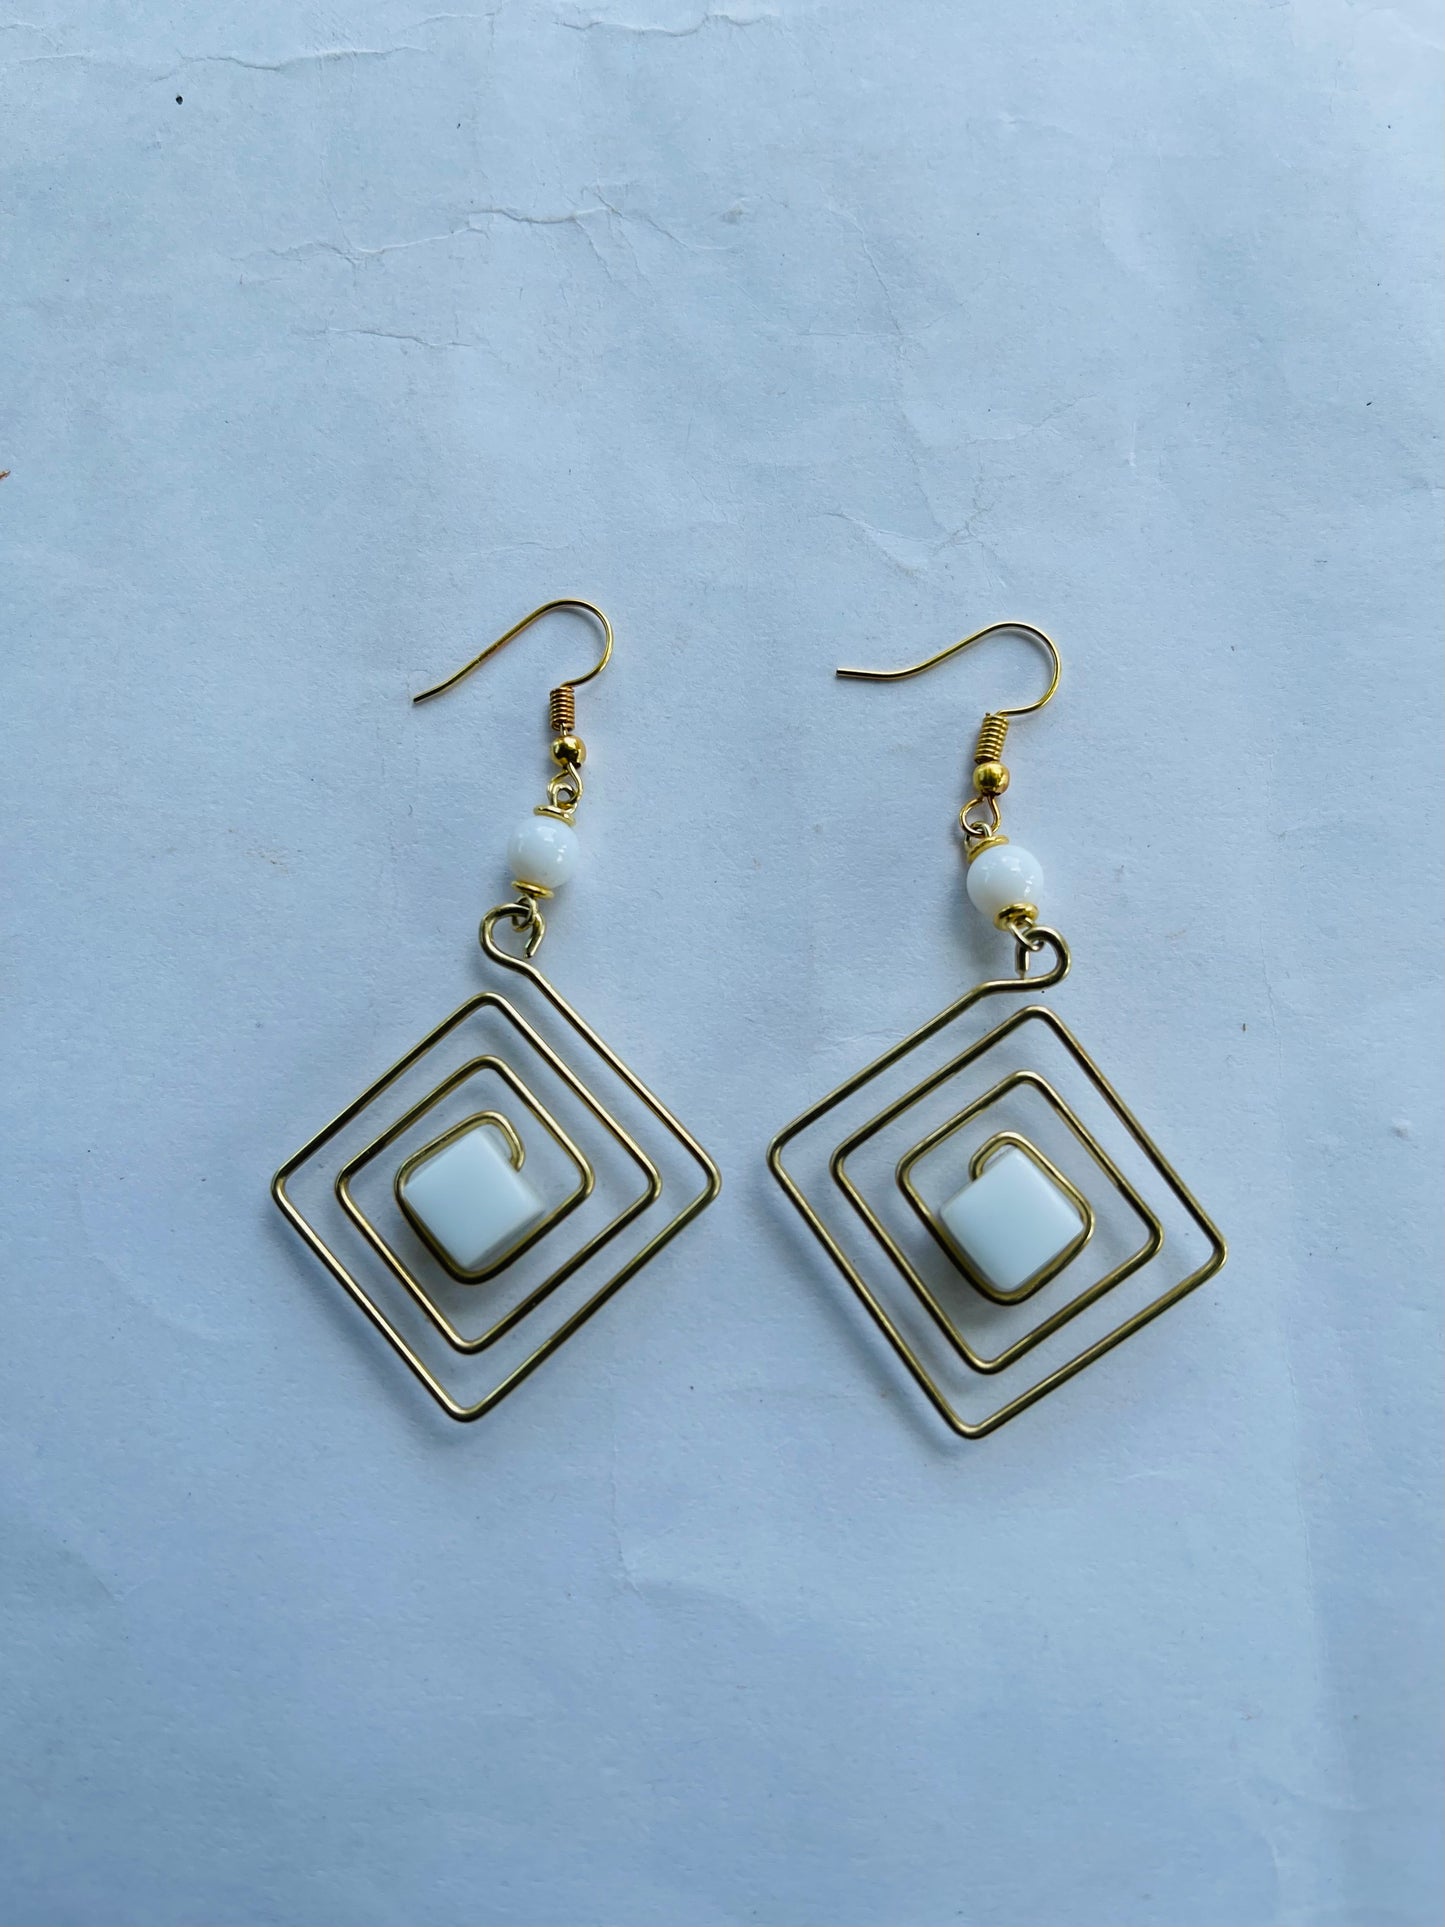 Brass made diamond shape earrings